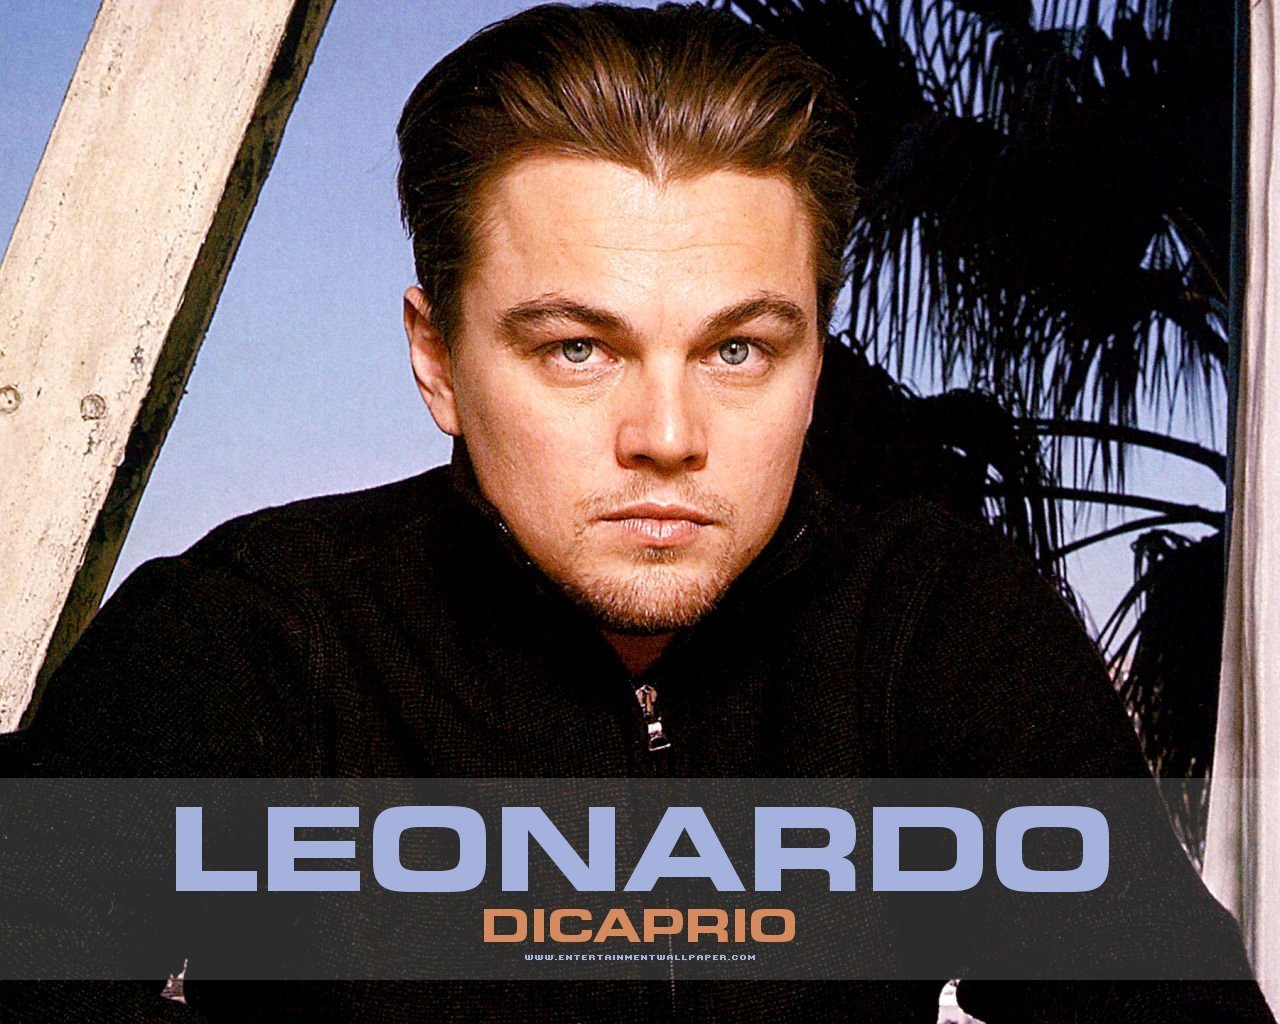 Leonardo DiCaprio - Leonardo DiCaprio Wallpaper (16946704) - Fanpop